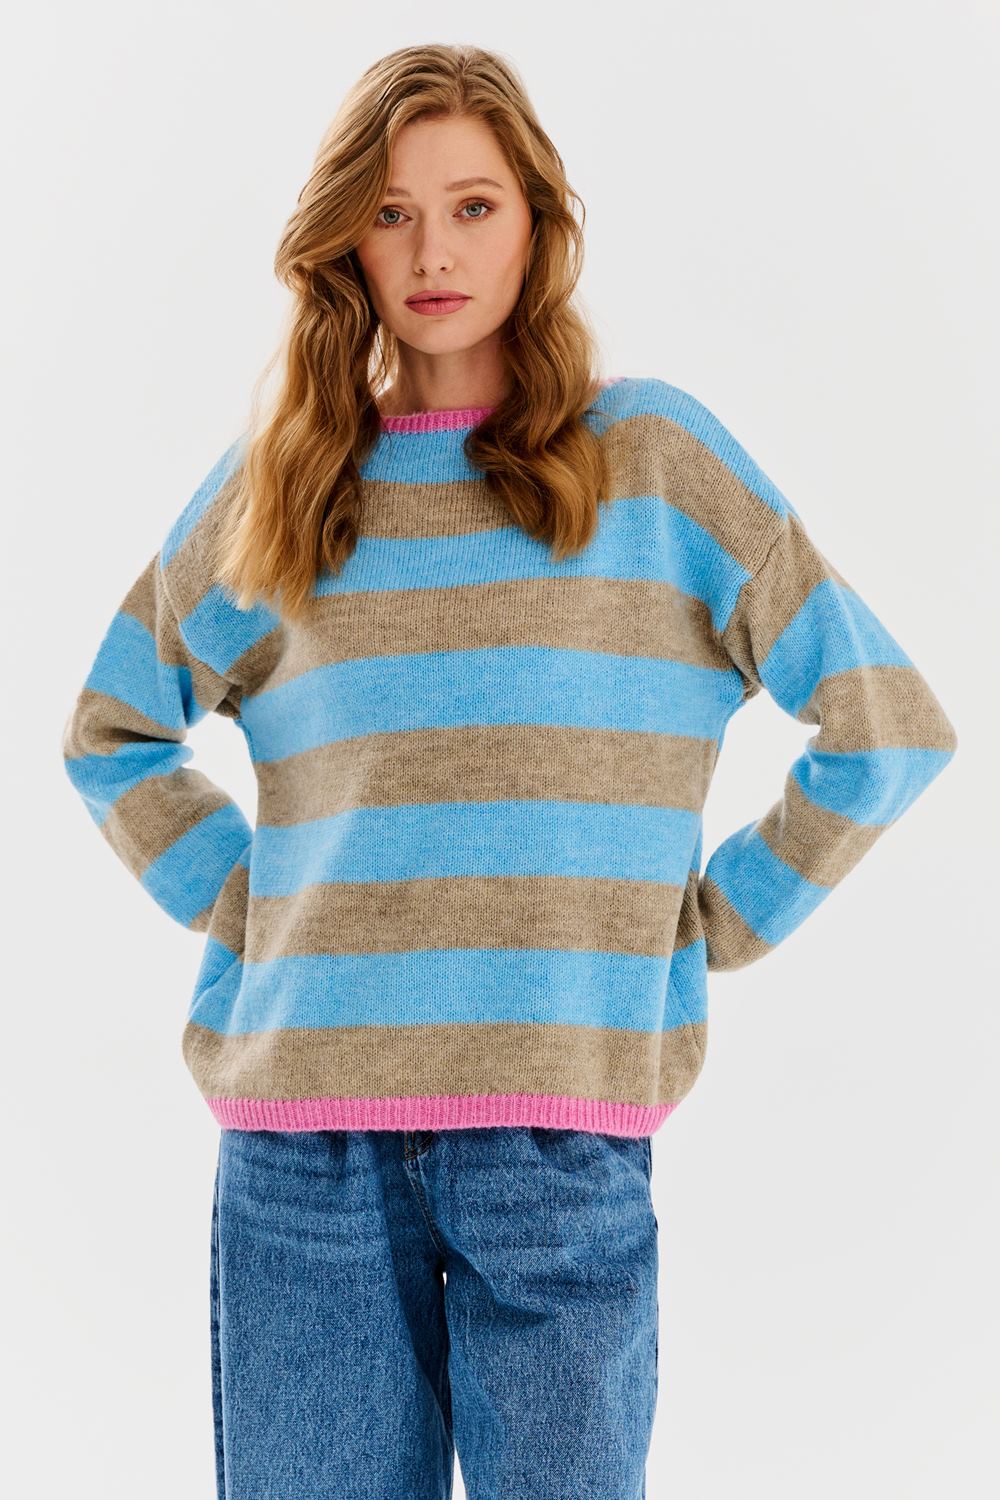 Holo Harmony sweater